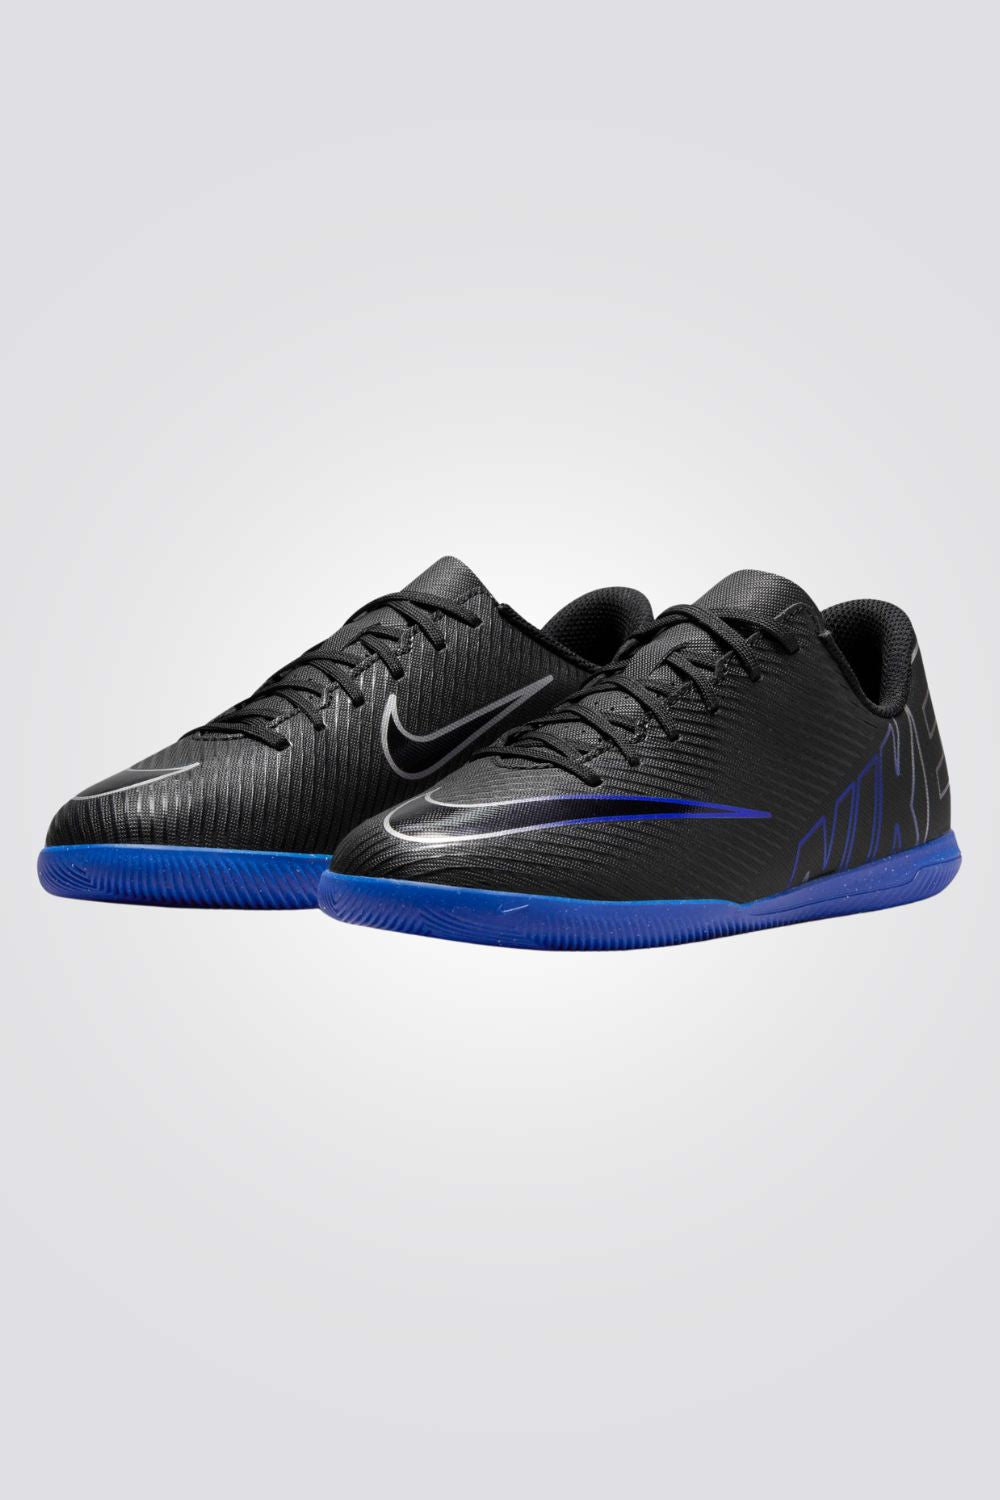 נעלי קטרגל לילדים ונוער Mercurial Vapor 15 Club בצבע שחור וכחול כהה